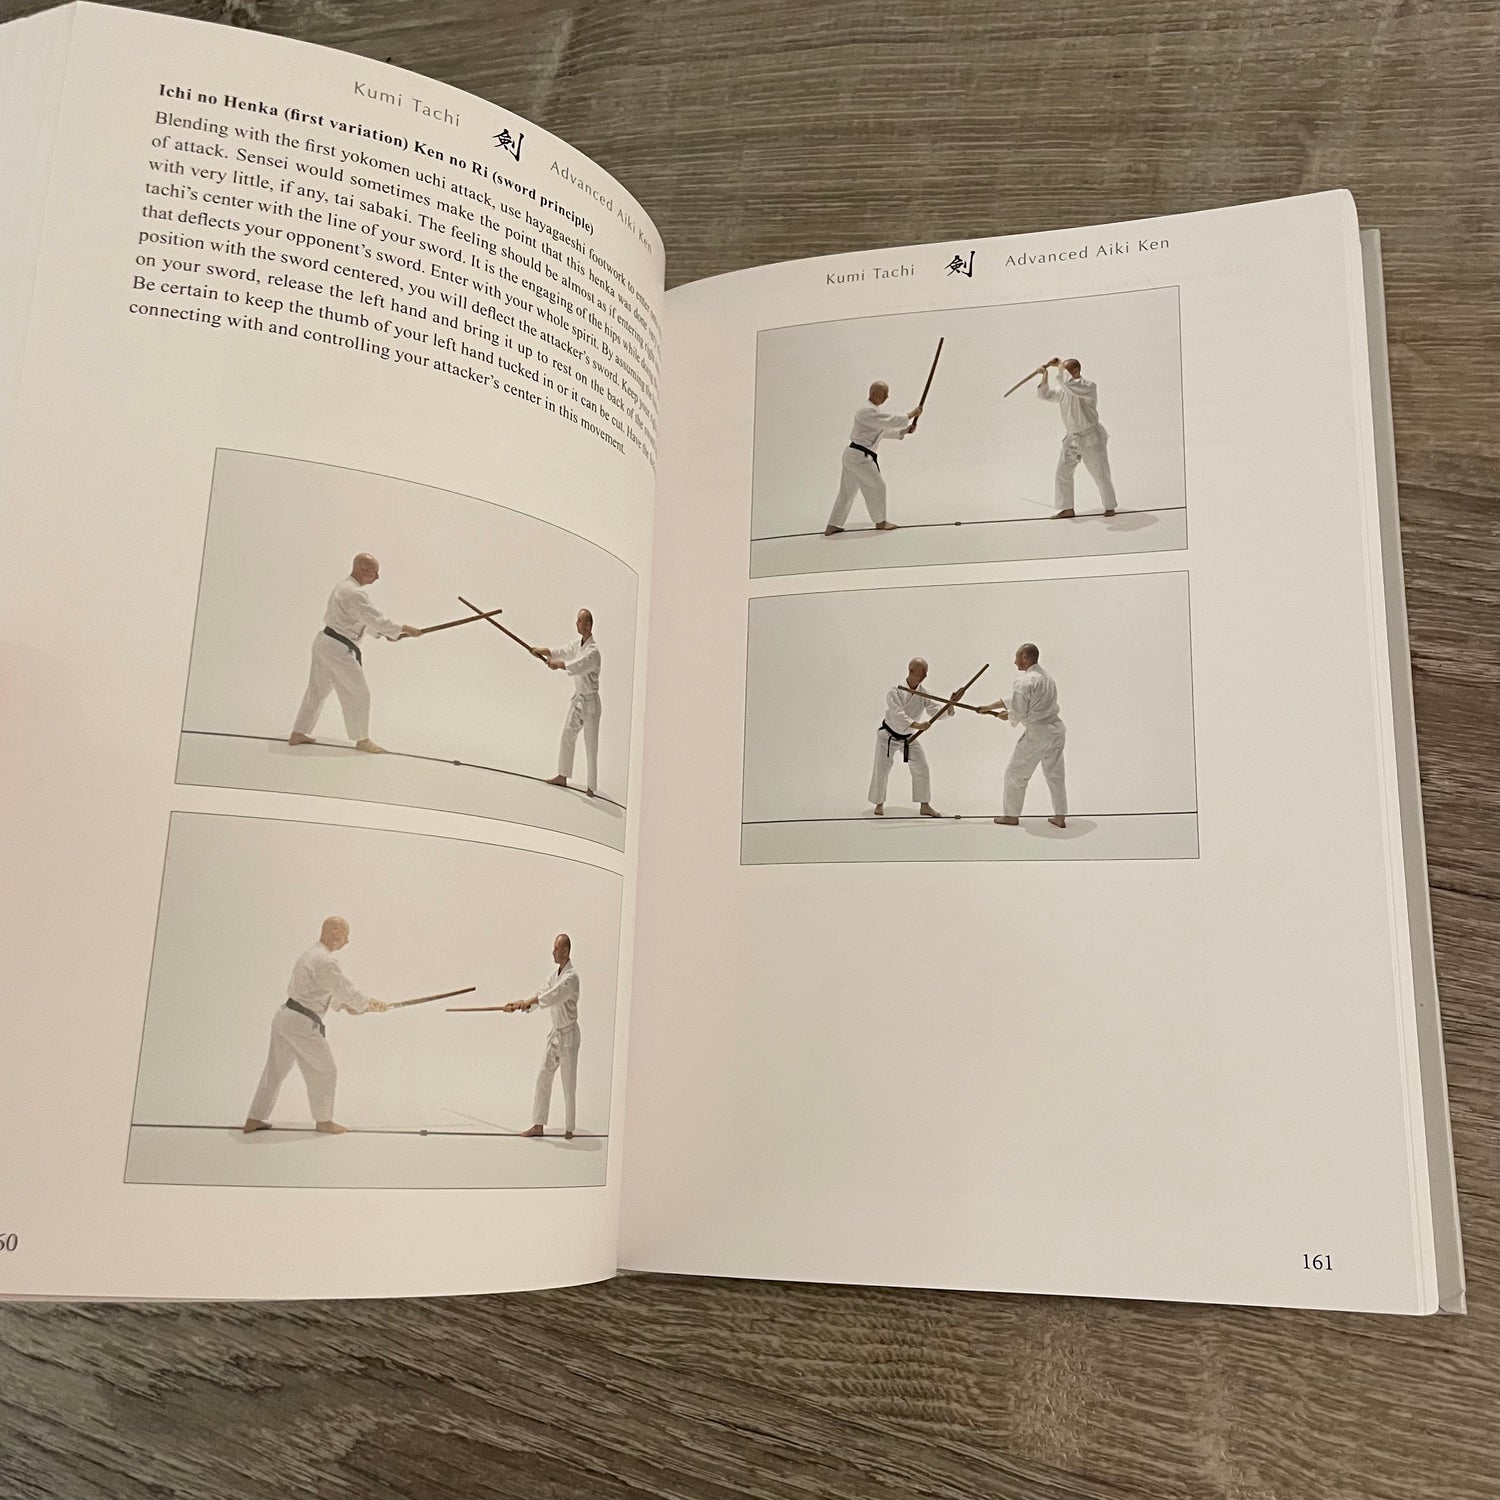 吹技 Basic & Advanced Aiki Ken & Aiki Jo 特別版ブック イーサン・ワイスガード著 (ハードカバー)